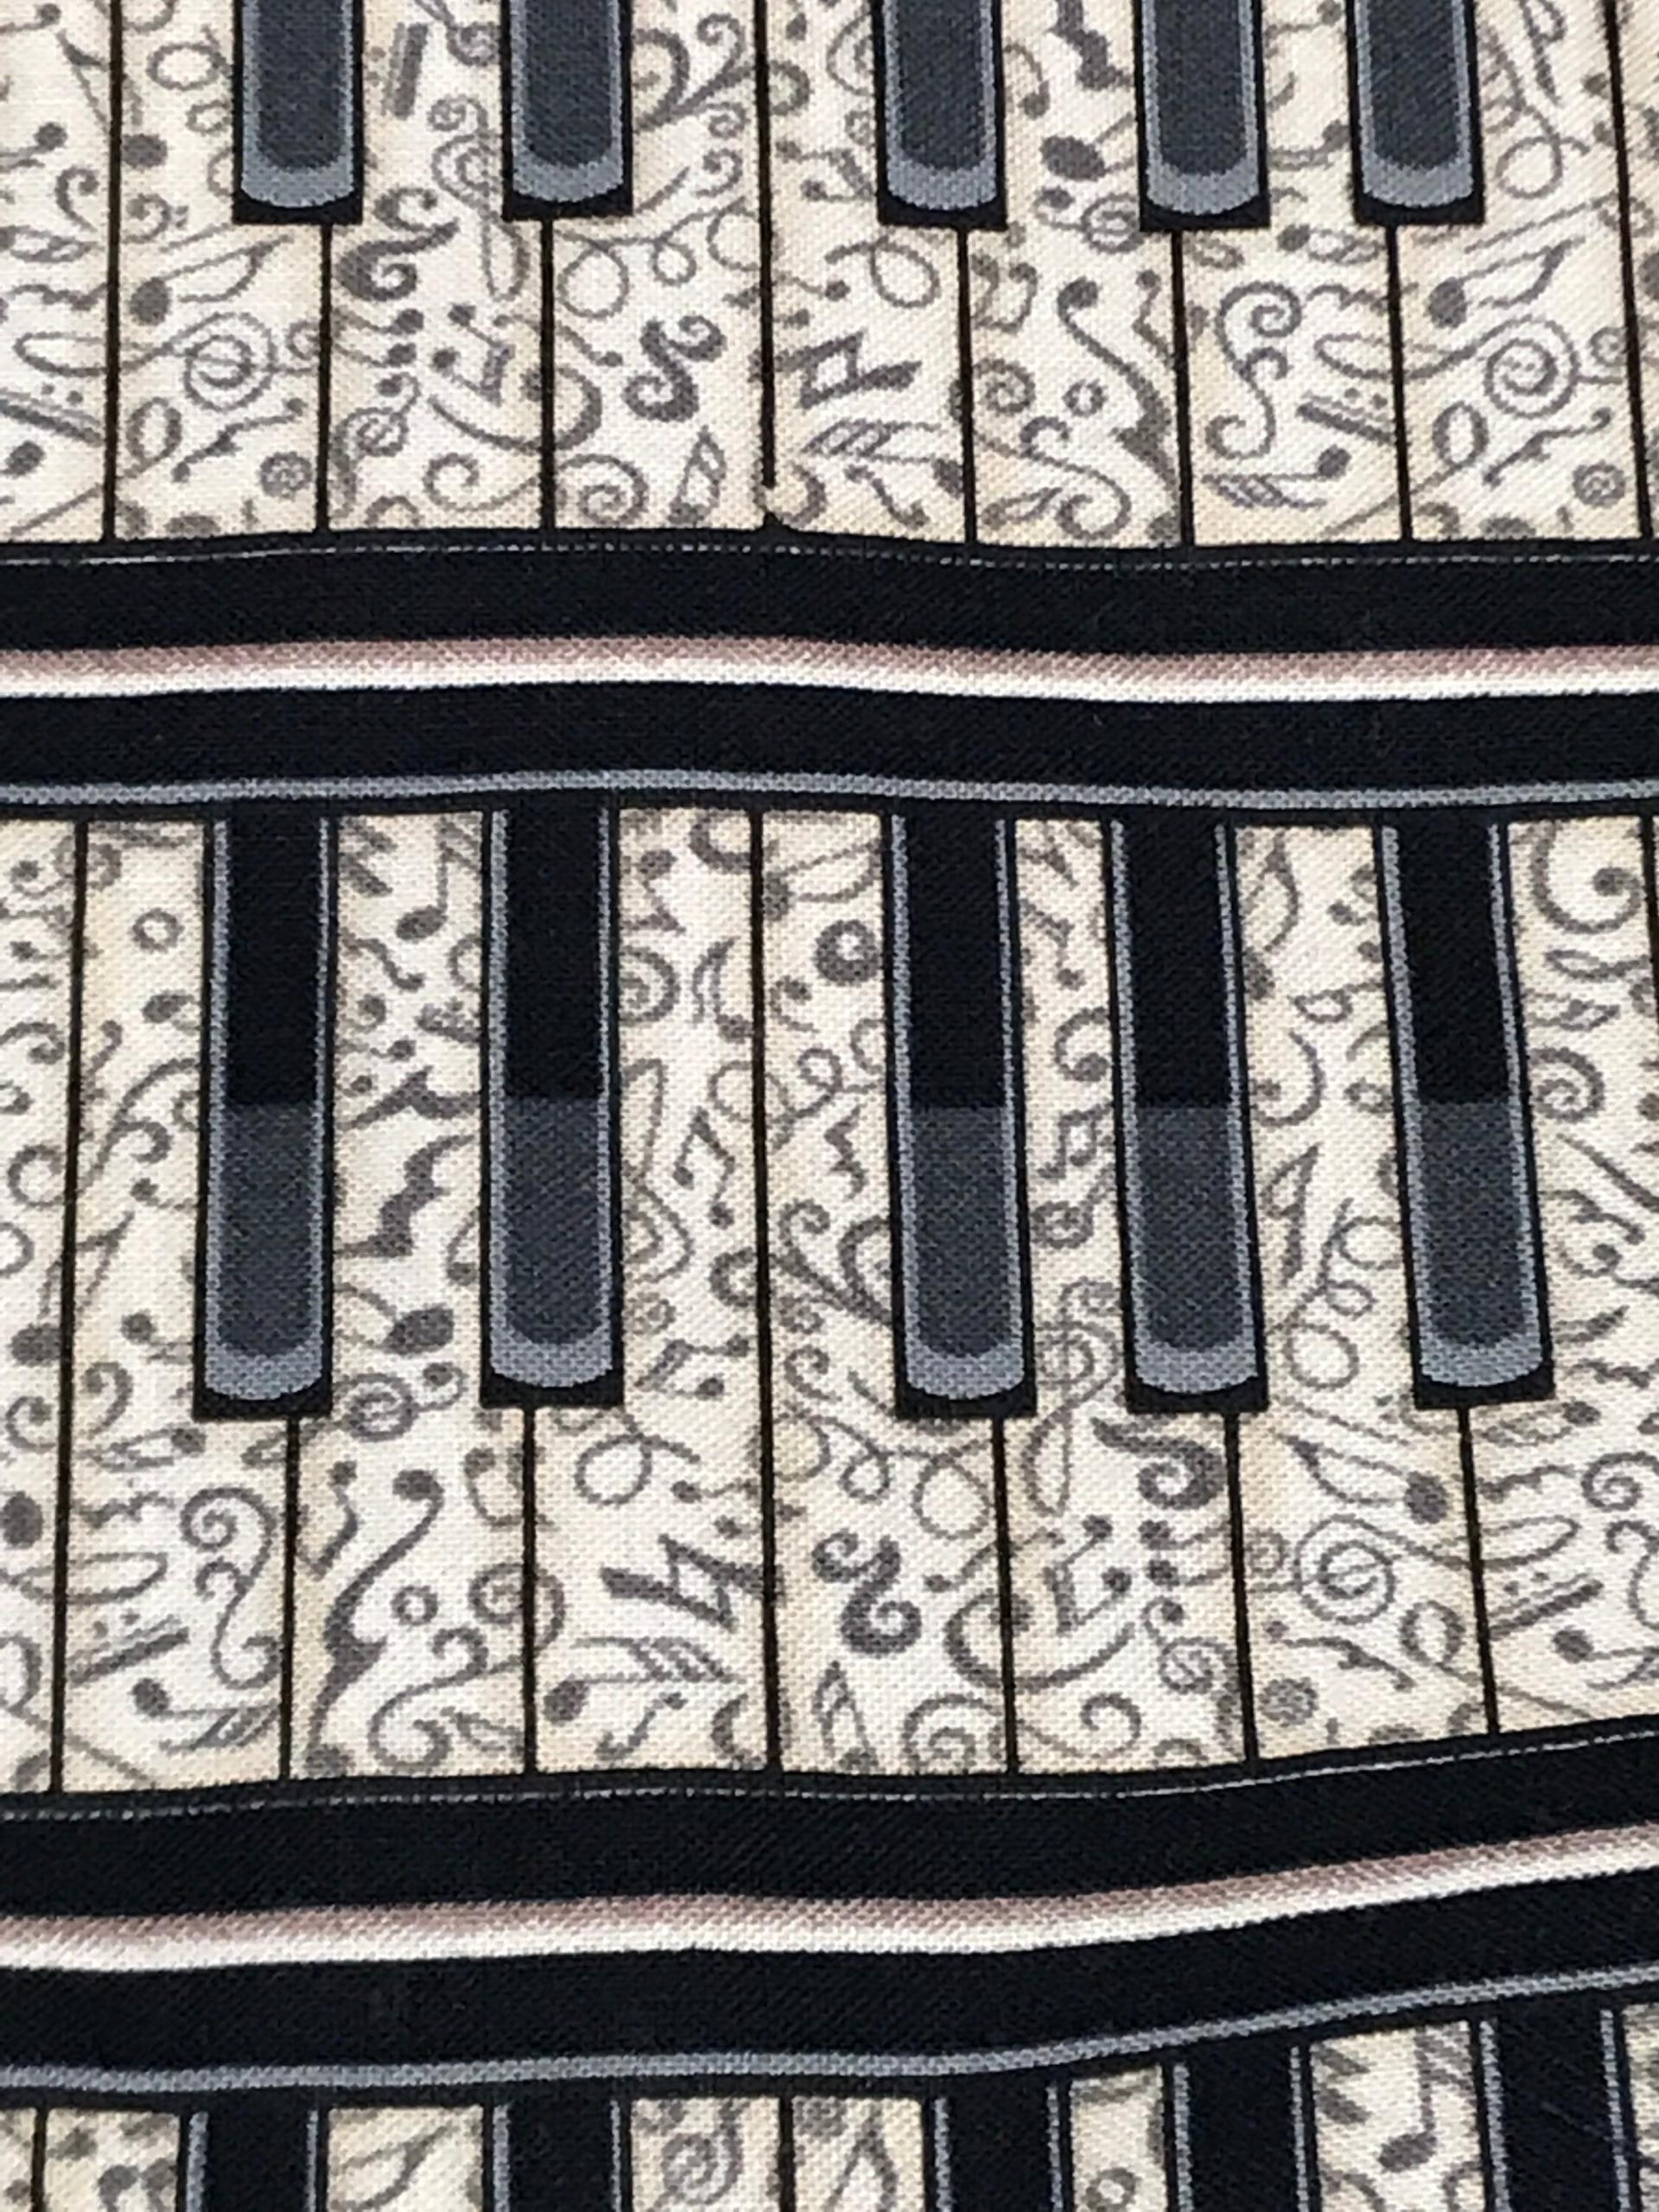 Close up of piano print